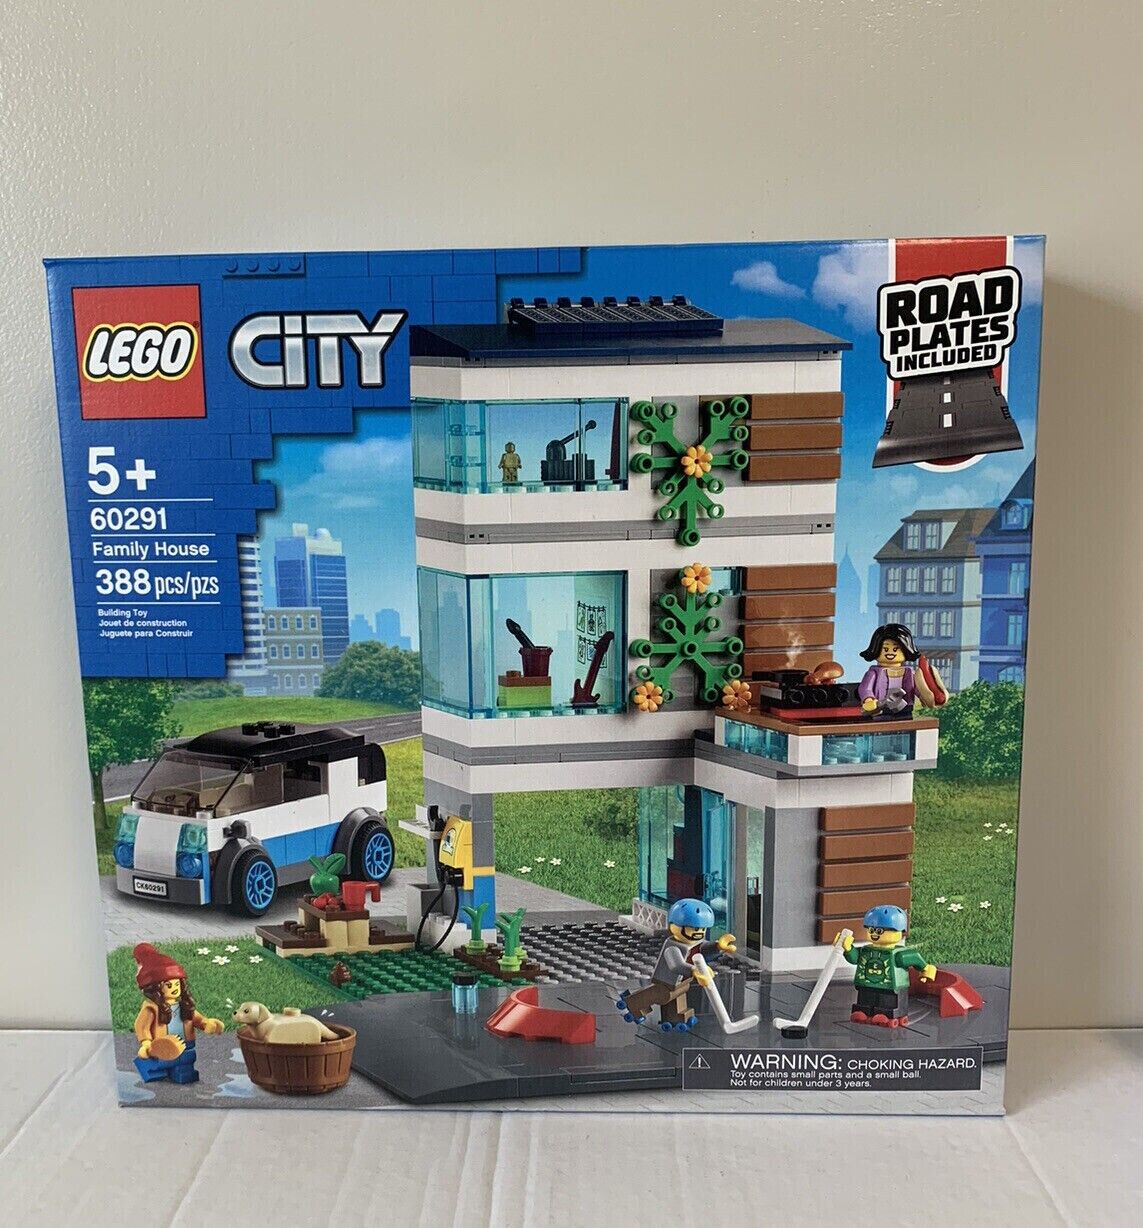 LEGO CITY 60291 Family House NEW 388pcs Unopened SEALED RETIRED